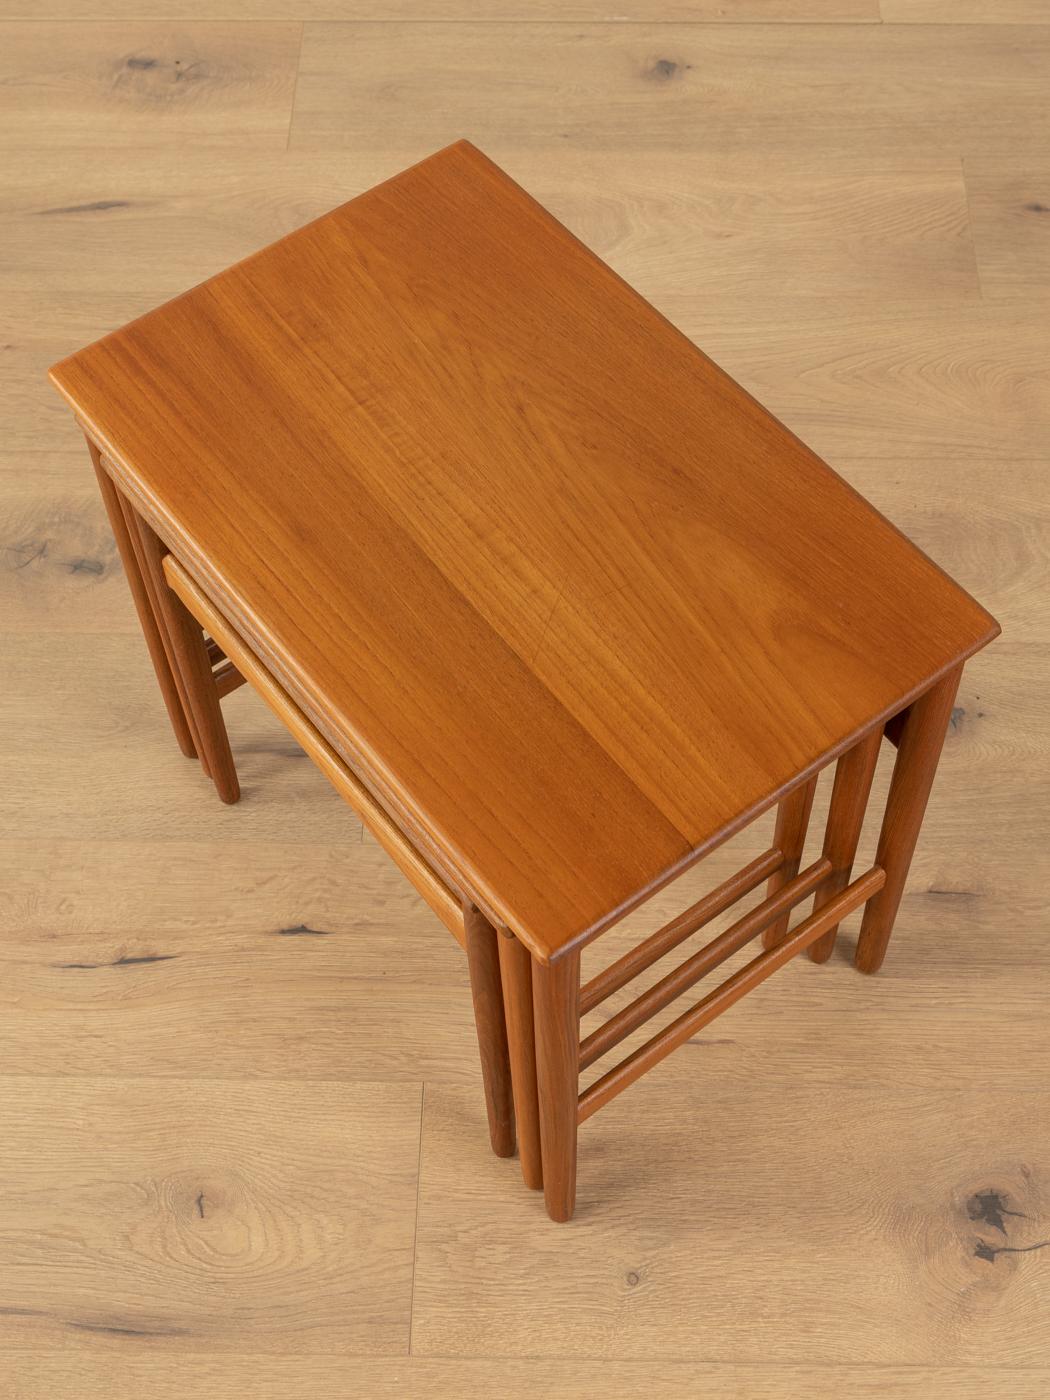 3x Hans J. Wegner Nesting Tables for Andreas Tuck, 1960s For Sale 1